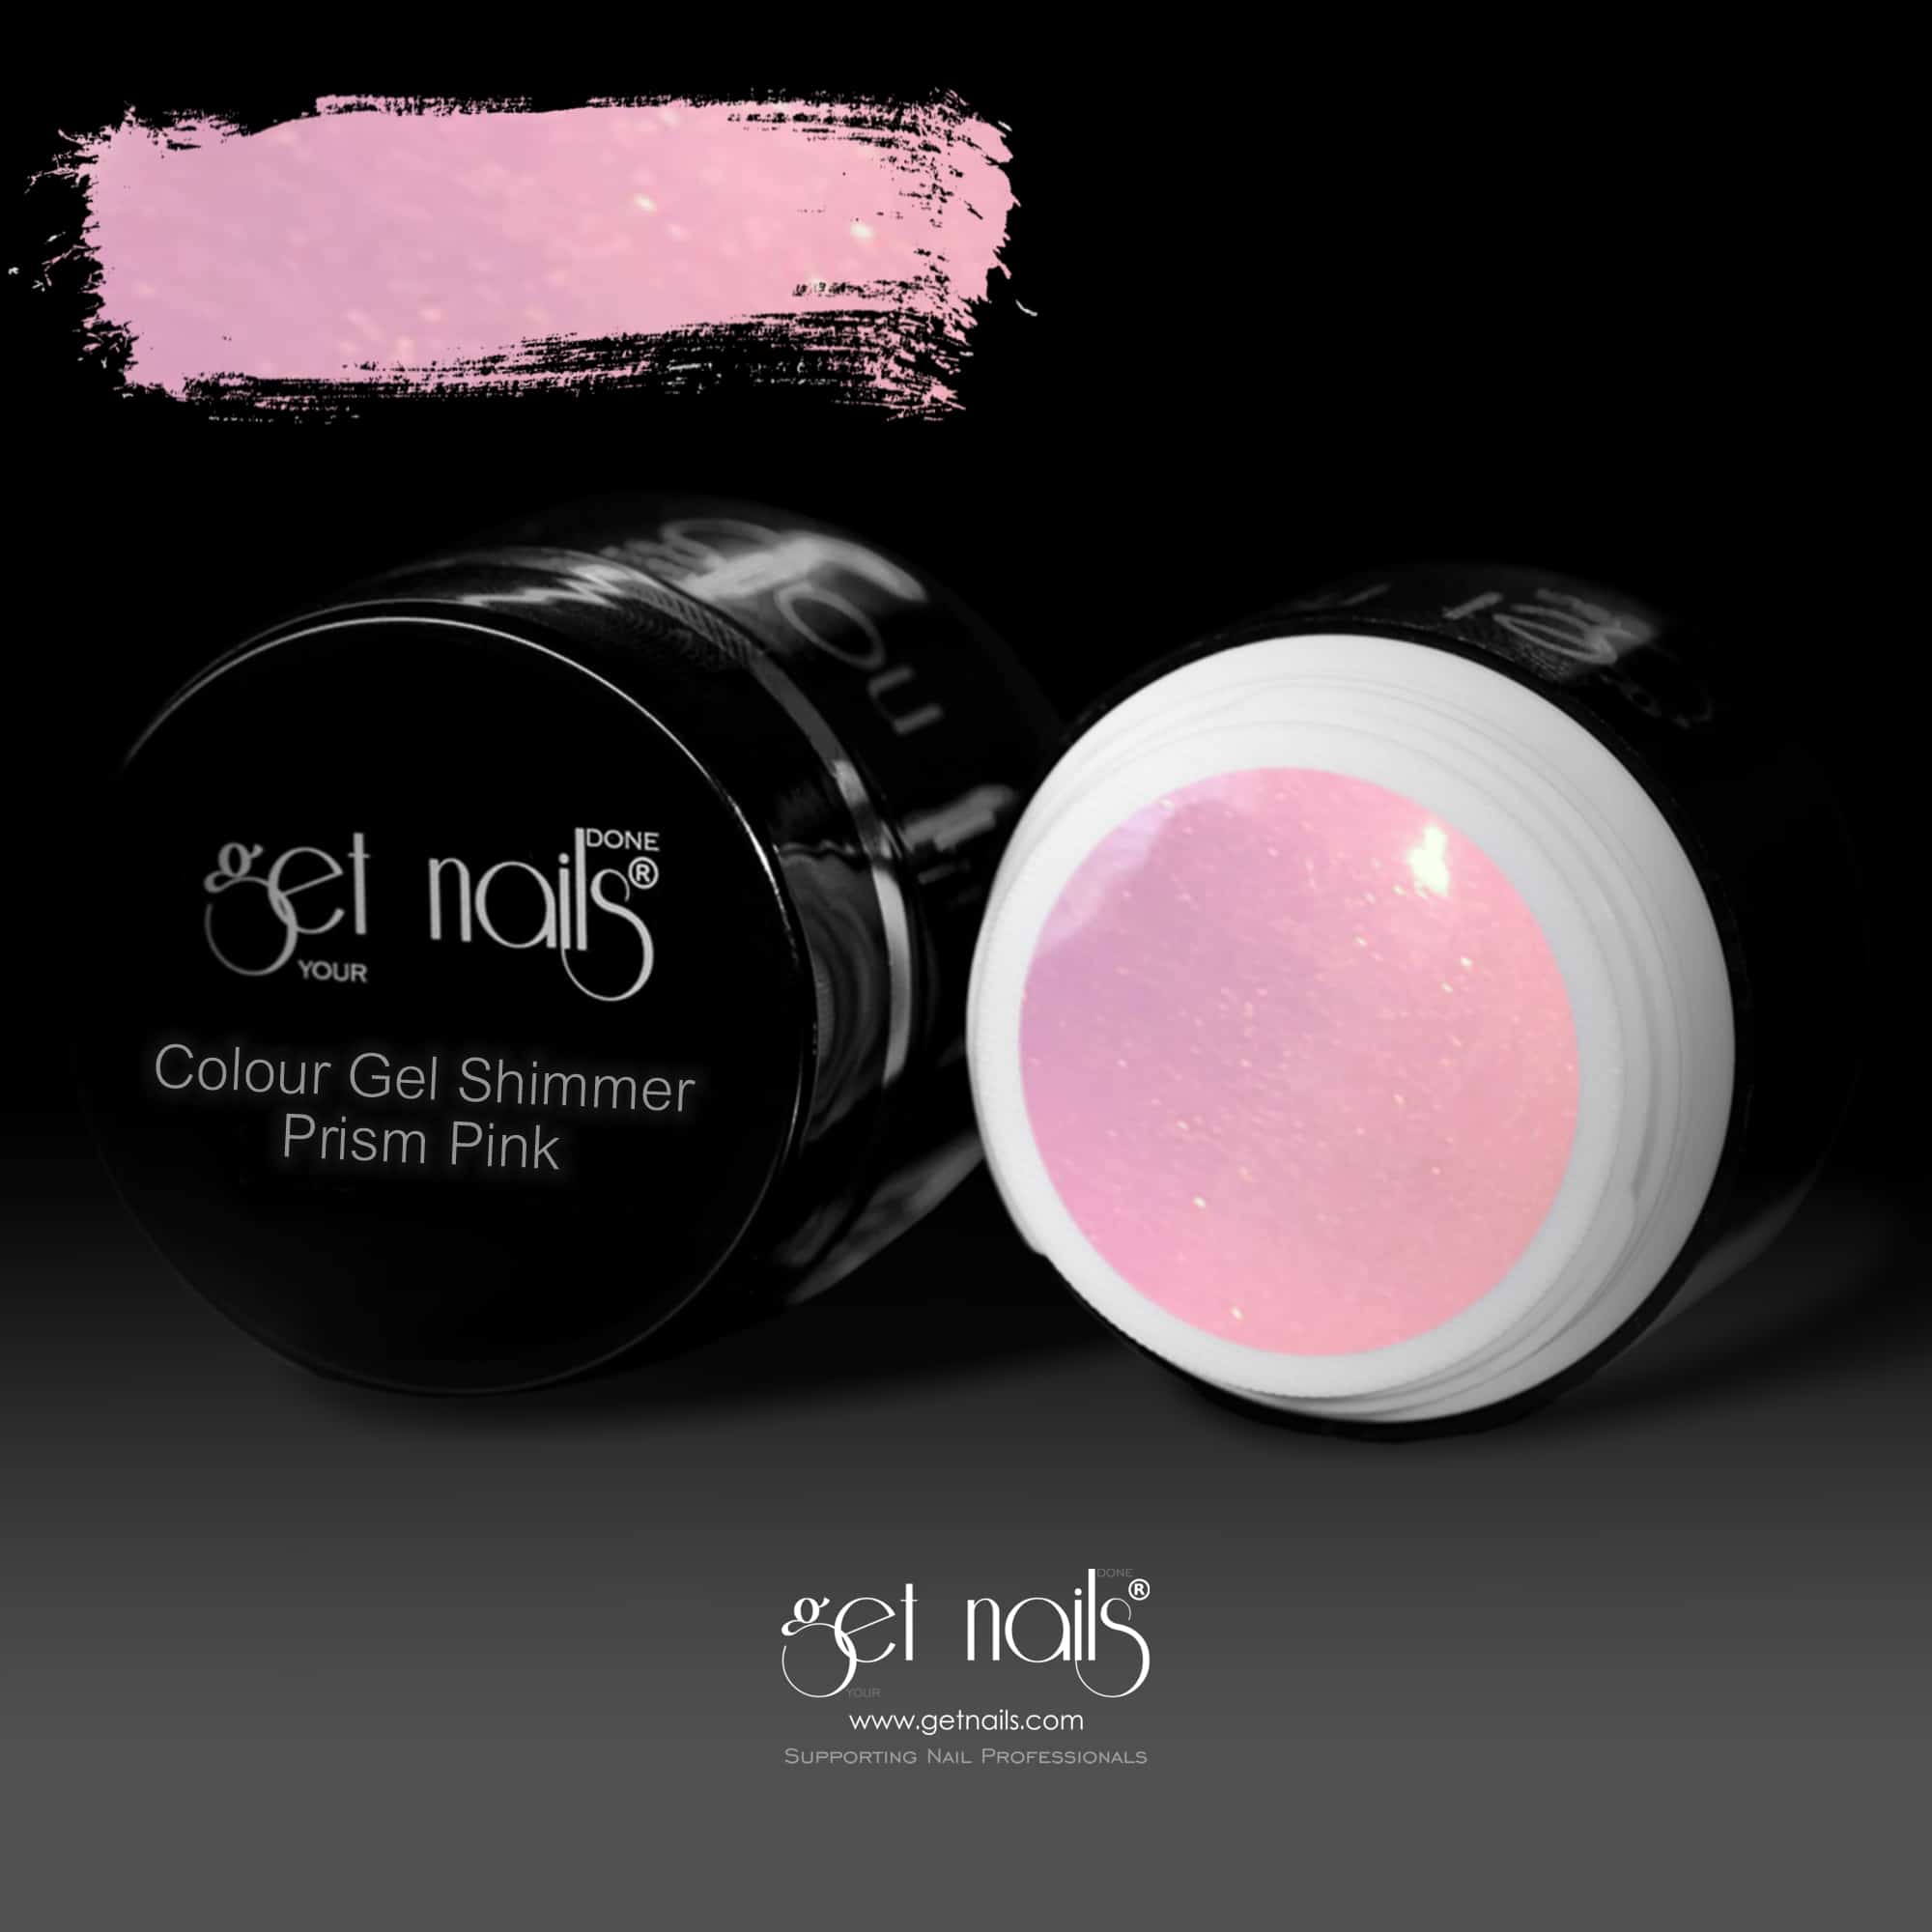 Get Nails Austria - Цветной гель Shimmer Prism Pink 5g